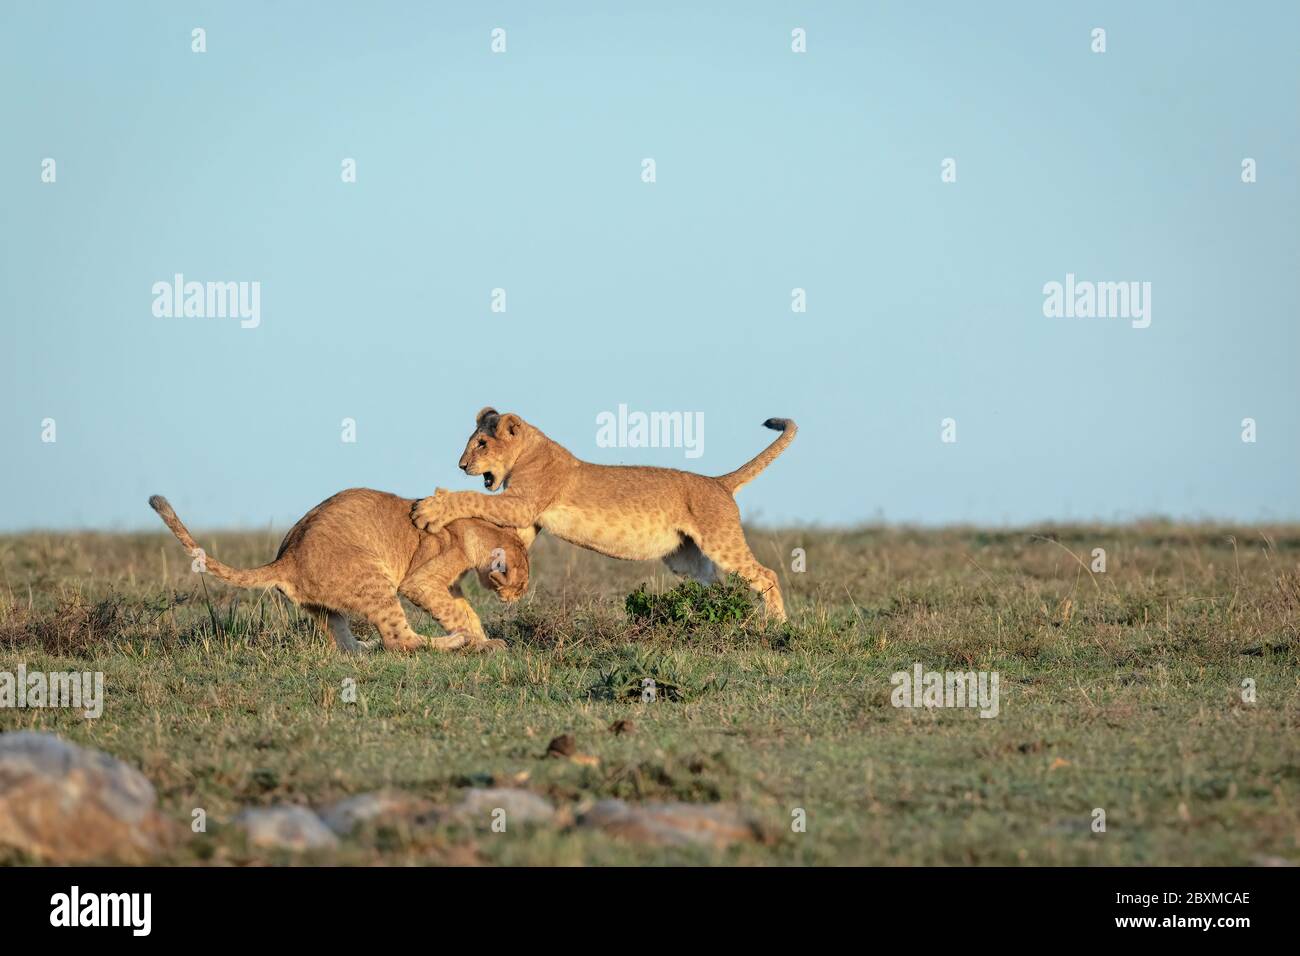 Dos cachorros de león juegan peleando al sol de la mañana temprano. Imagen tomada en el Masai Mara, Kenia. Foto de stock